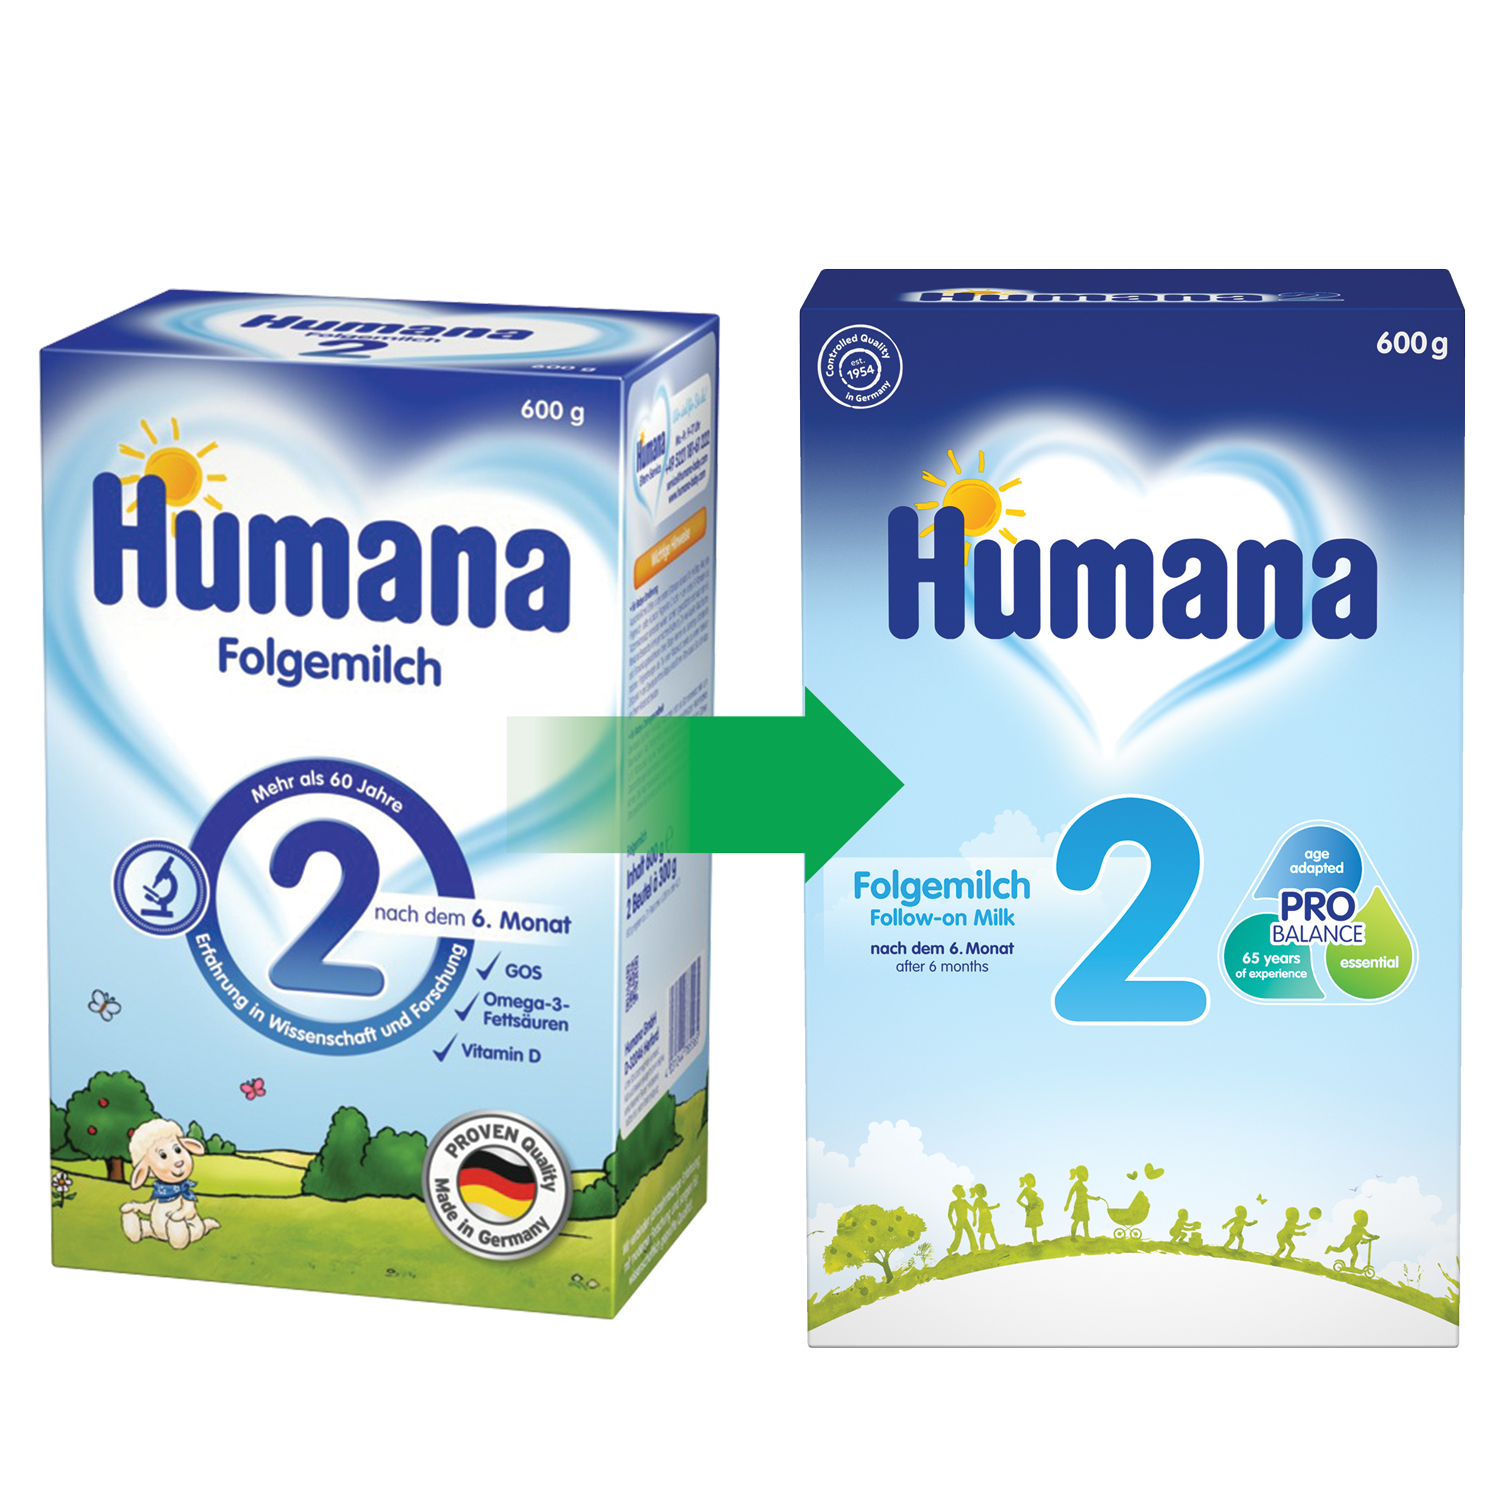 Суха молочна суміш Humana 2 c пребіотиками, 600 г - фото 1